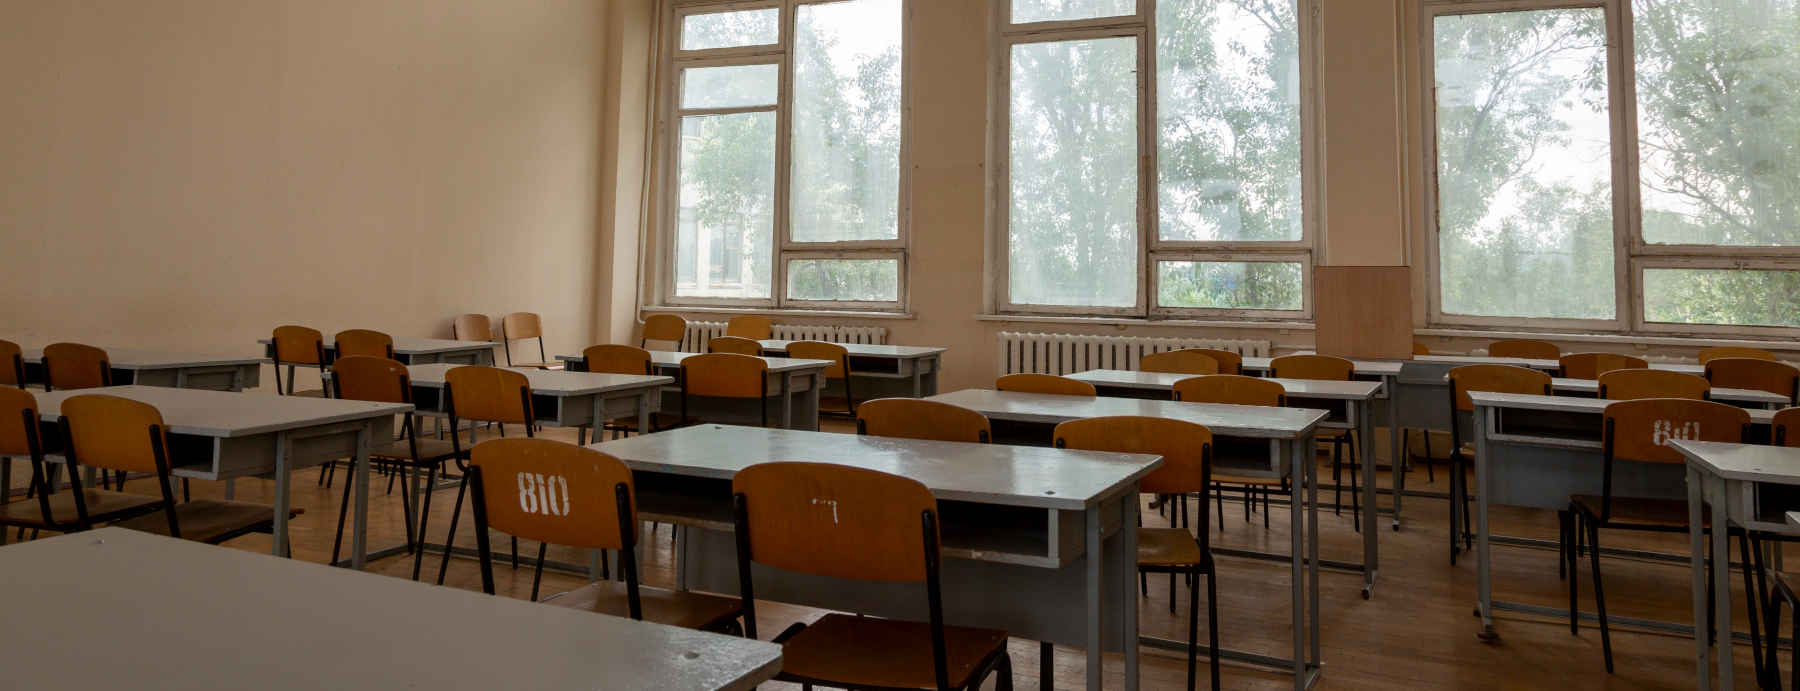 La Regione Lombardia investe sull’aria pulita nelle scuole